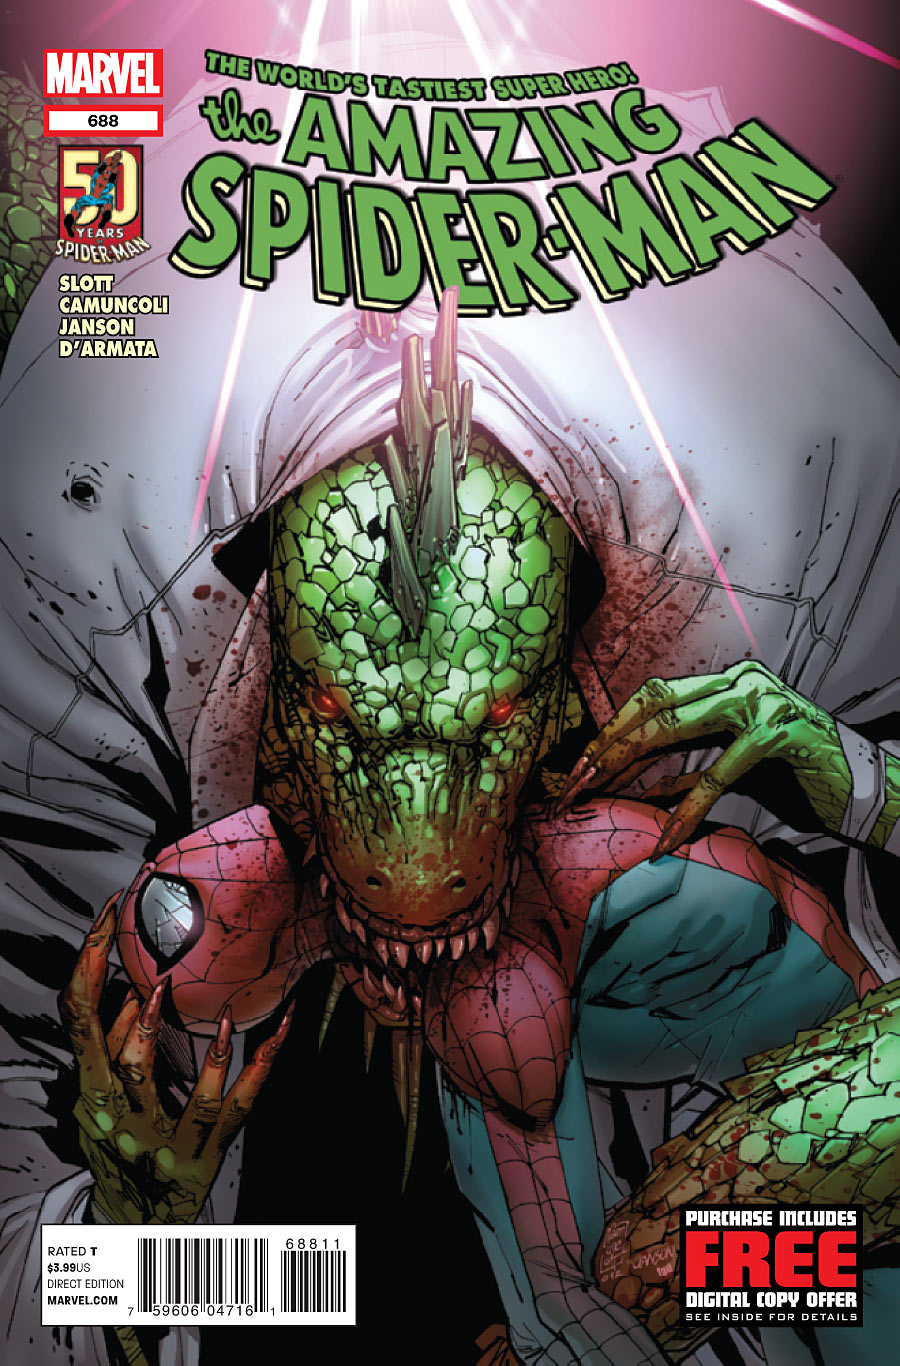 Amazing Spider-Man Vol. 1 #688